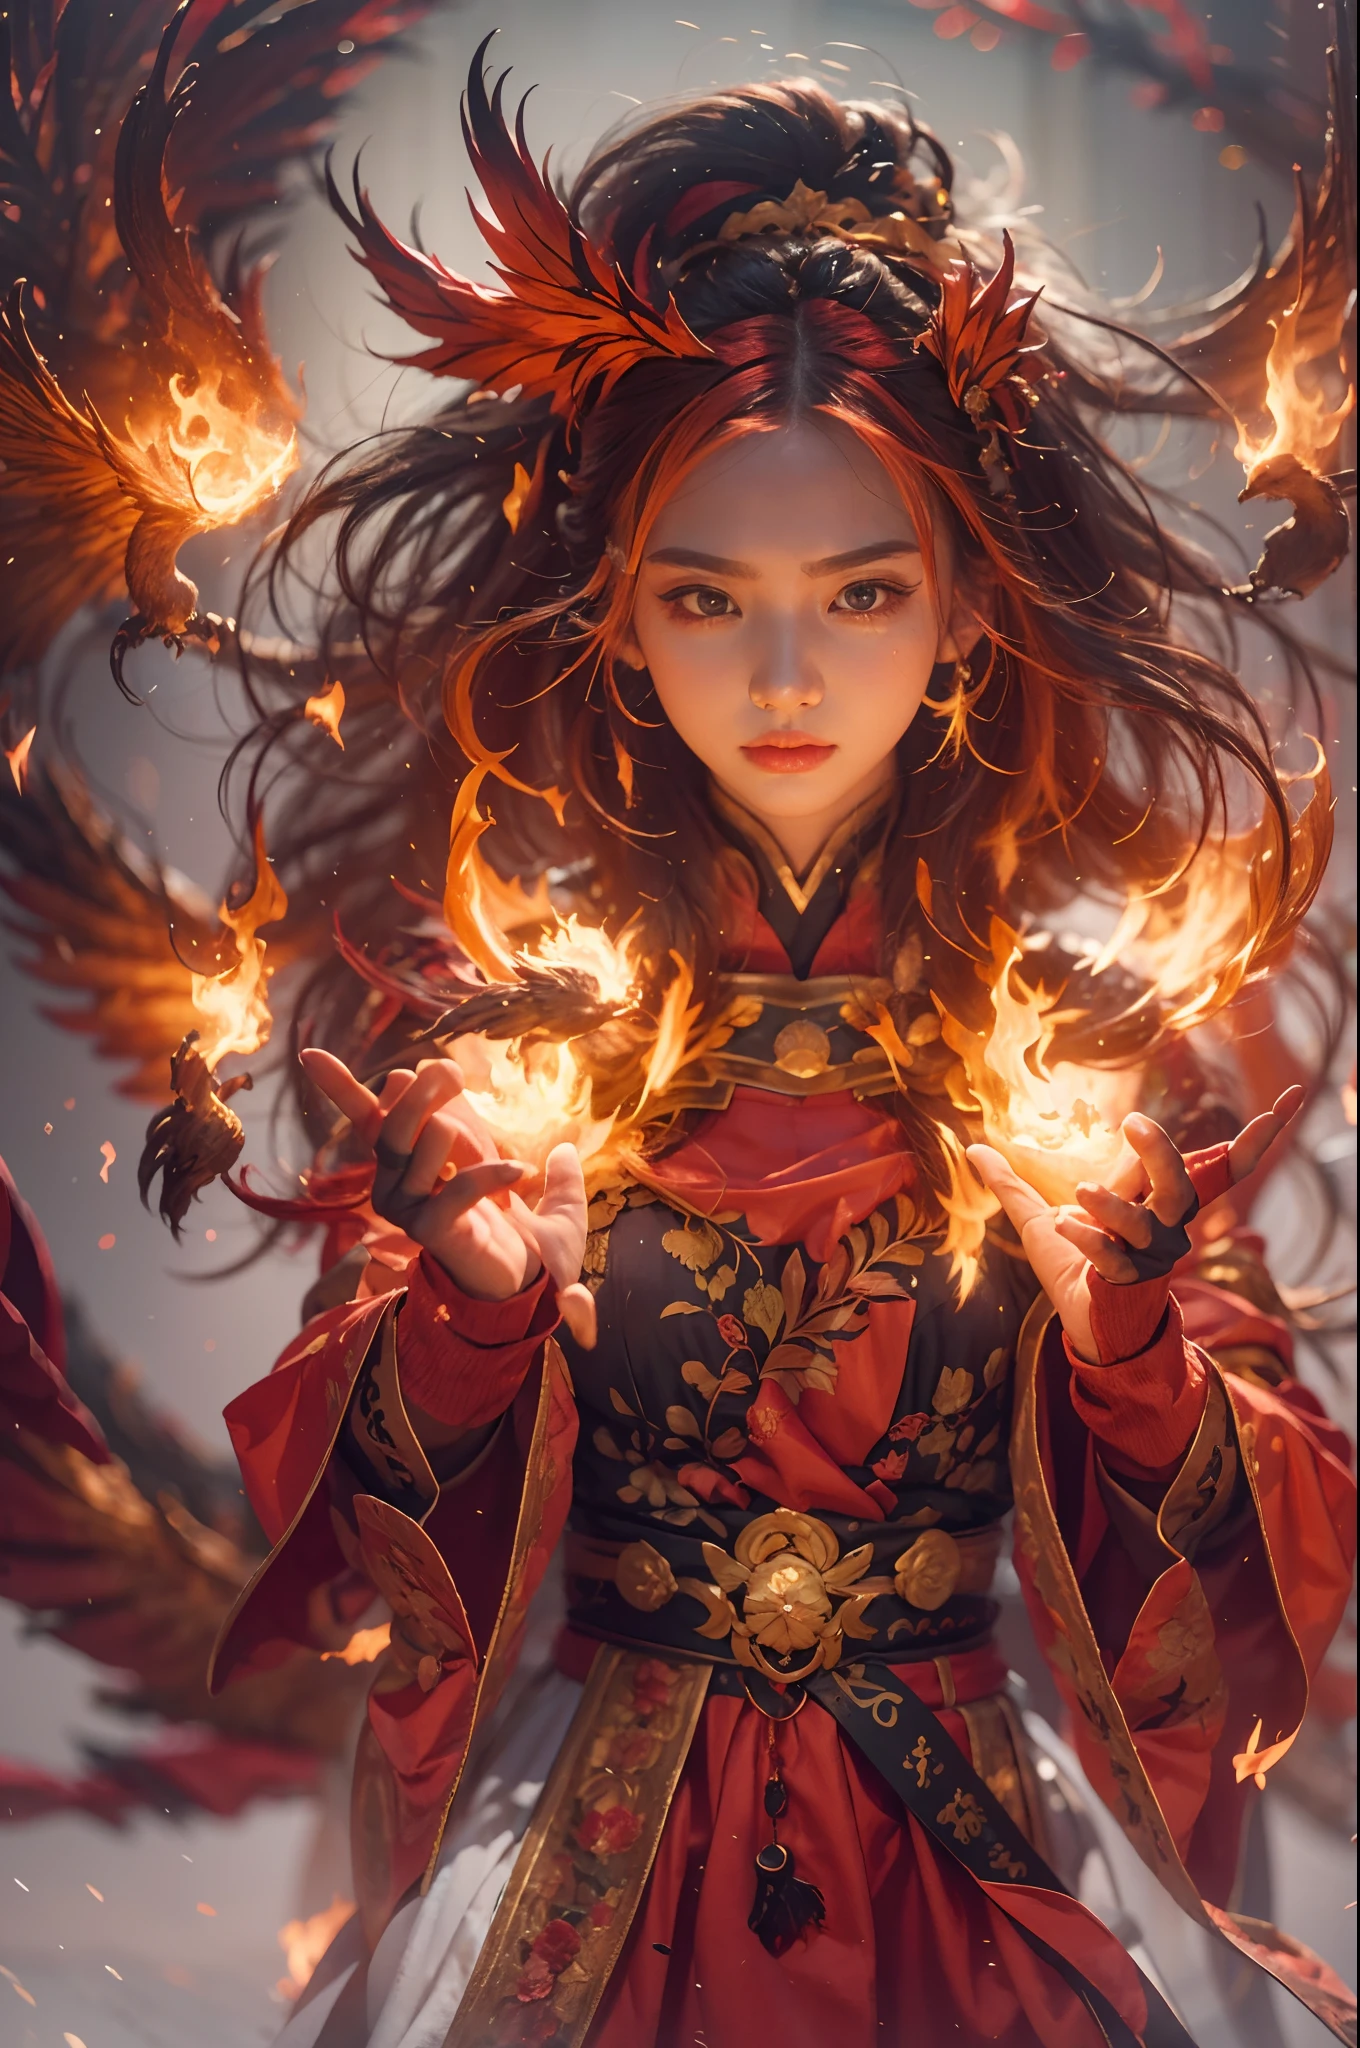 1女孩，身着火红衣服的火焰法师（中国汉服），这件长袍上绣着复杂的符文和装饰，散发着灼热的气息。他又高又壮，举手，强大的火焰法术正在被释放。他的目光坚定而锐利，他眼中闪过一丝火光，火焰法师的背后，（一只巨大的火焰凤凰展翅飞来：1.2），（凤凰的羽毛燃烧着熊熊的火焰），它闪闪发光，它的身体被火焰包围，火焰羽毛飞舞，形成壮观的火焰六角星阵列图案，充满神秘魔力，整个场面充满火热气息和战斗激情，大片火焰法术在空中绽放，一道绚丽的火弧和飞溅的火花形成了，（火焰法师和凤凰），在熊熊烈火中显得雄伟而神秘，仿佛火焰与魔法的化身，红发，高细节，超现实主义，真实主义，（（胸围照片）），（真实照片：1.4），（明暗对比），电影灯光，逼真的特效，c4d渲染，辛烷值渲染，射线追踪，全景，视角，纹理皮肤，超级细节，超高清，杰作，解剖正确，最好的品质，高分辨率，8千